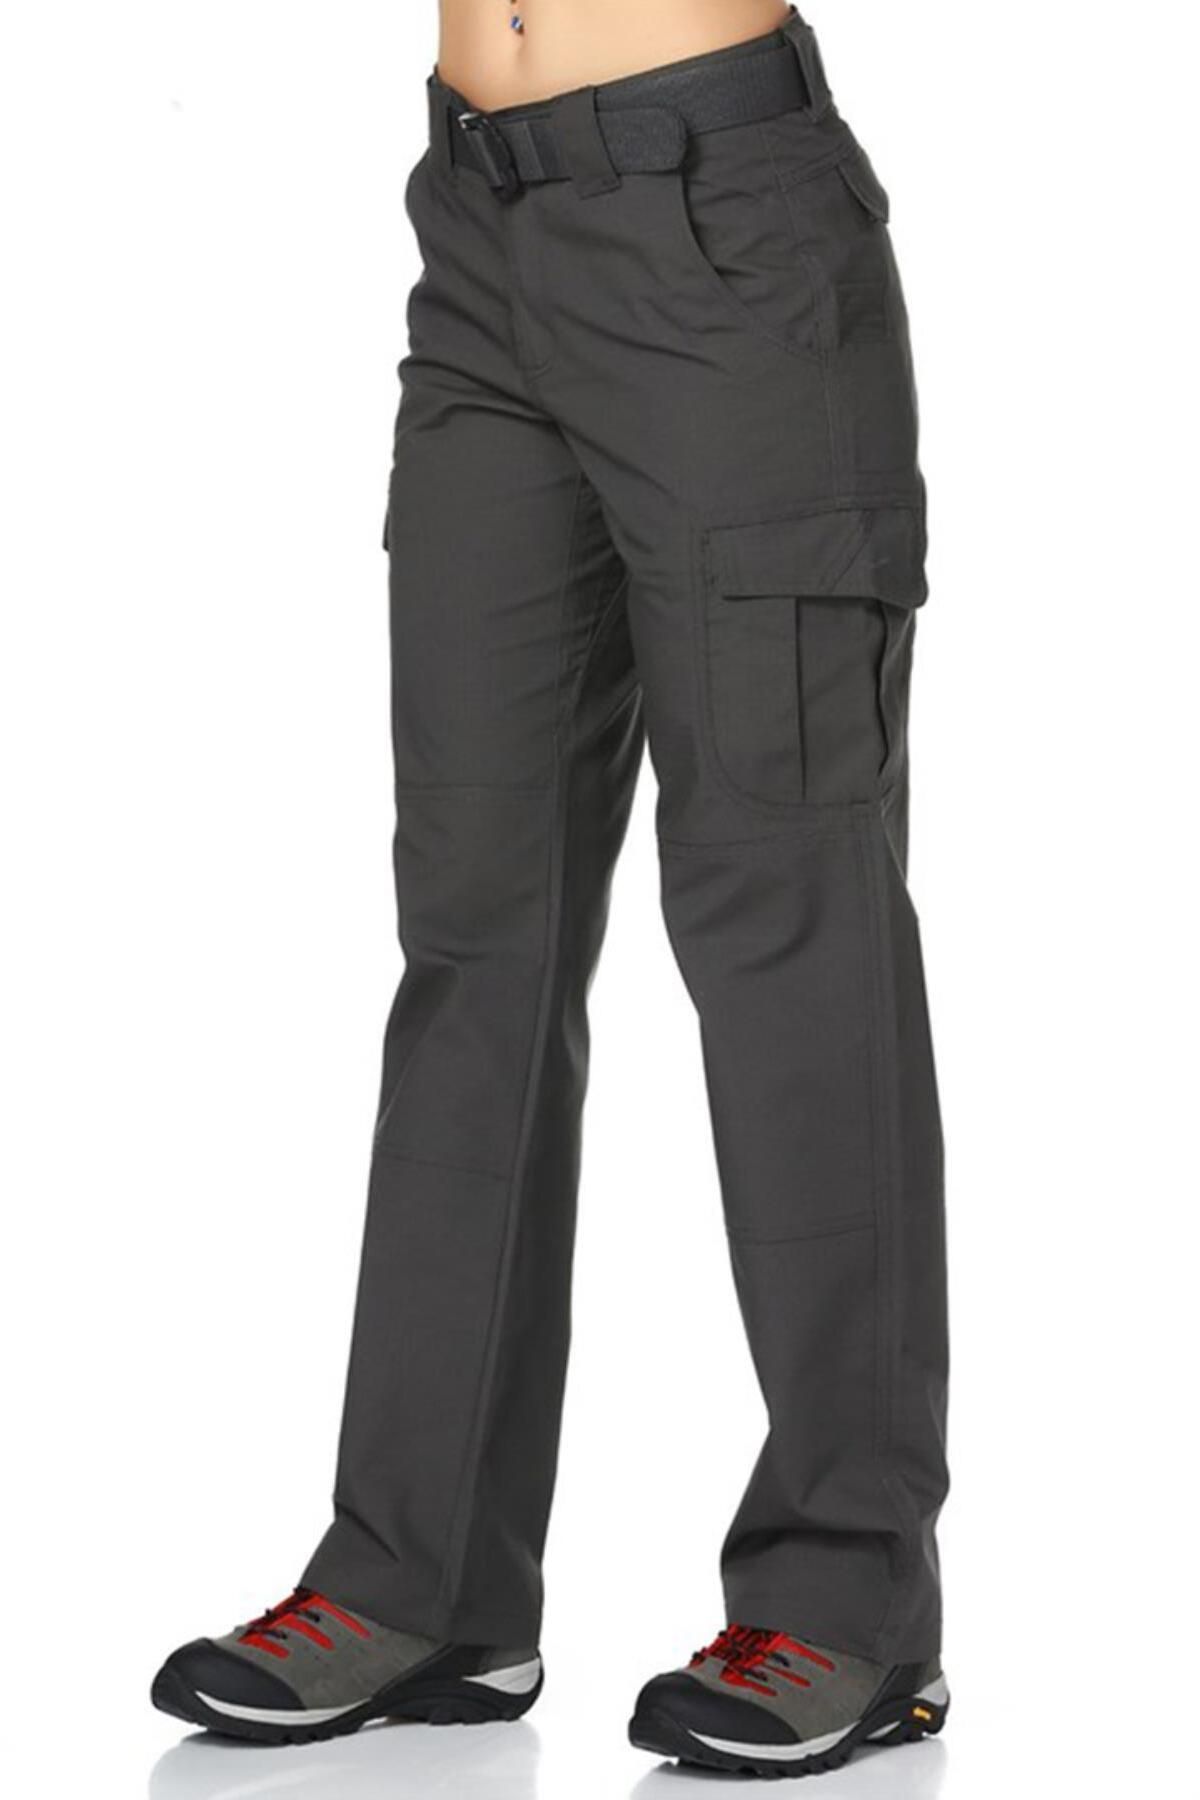 Evolite E-3123 - Goldrush Tactical Kadın Pantolon